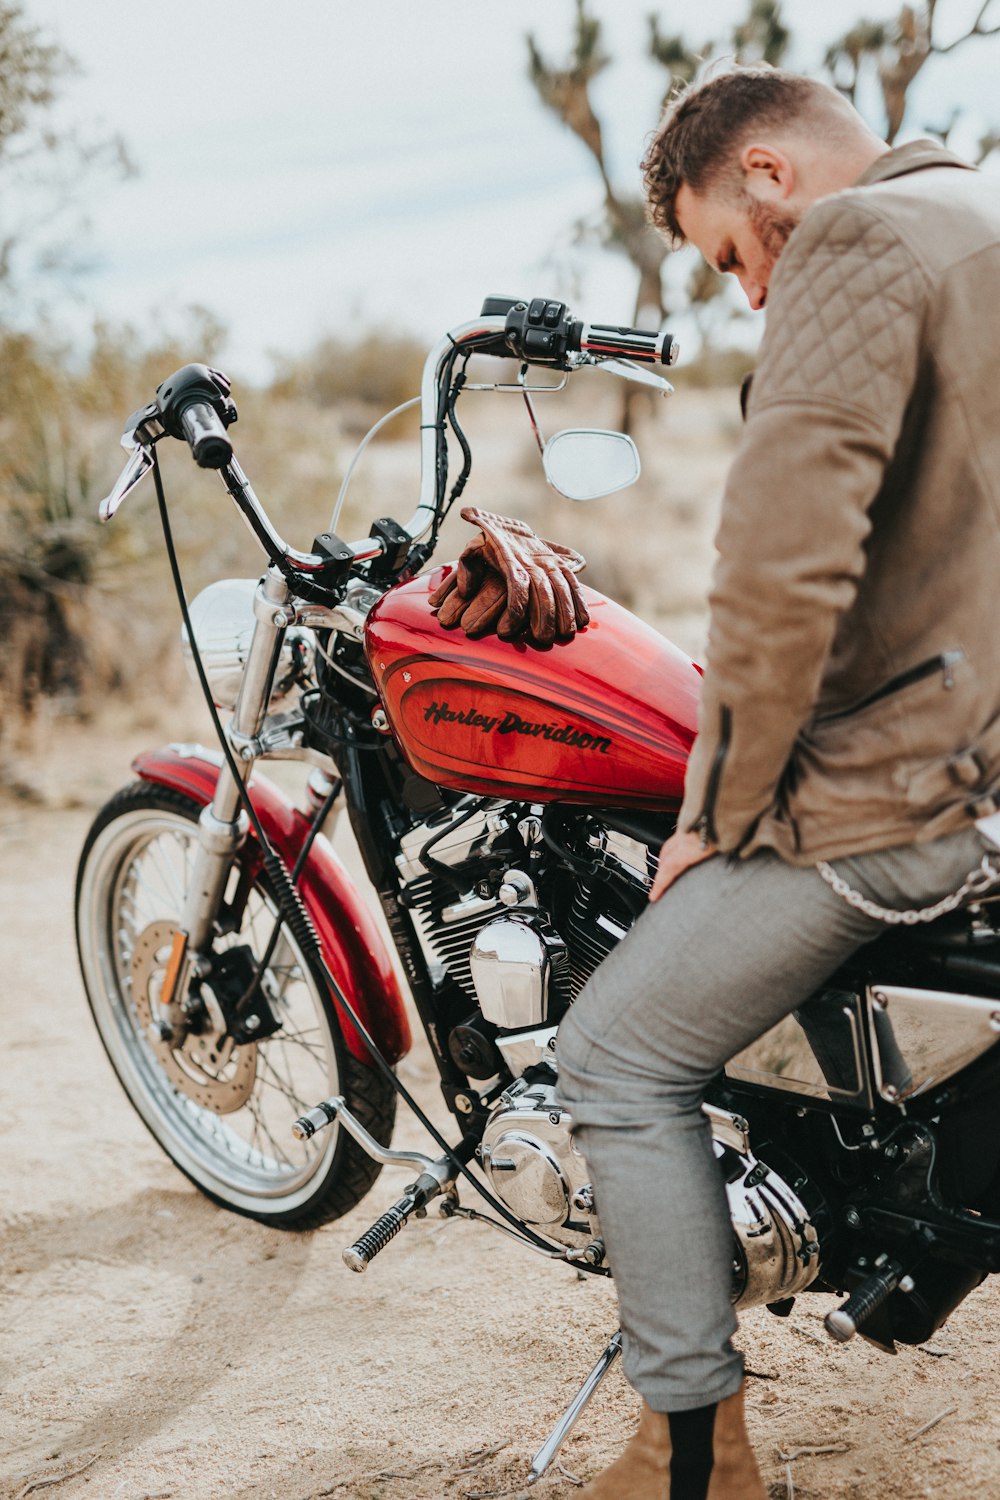 l'uomo si siede sulla motocicletta Harley-Davidson rossa e nera durante il giorno